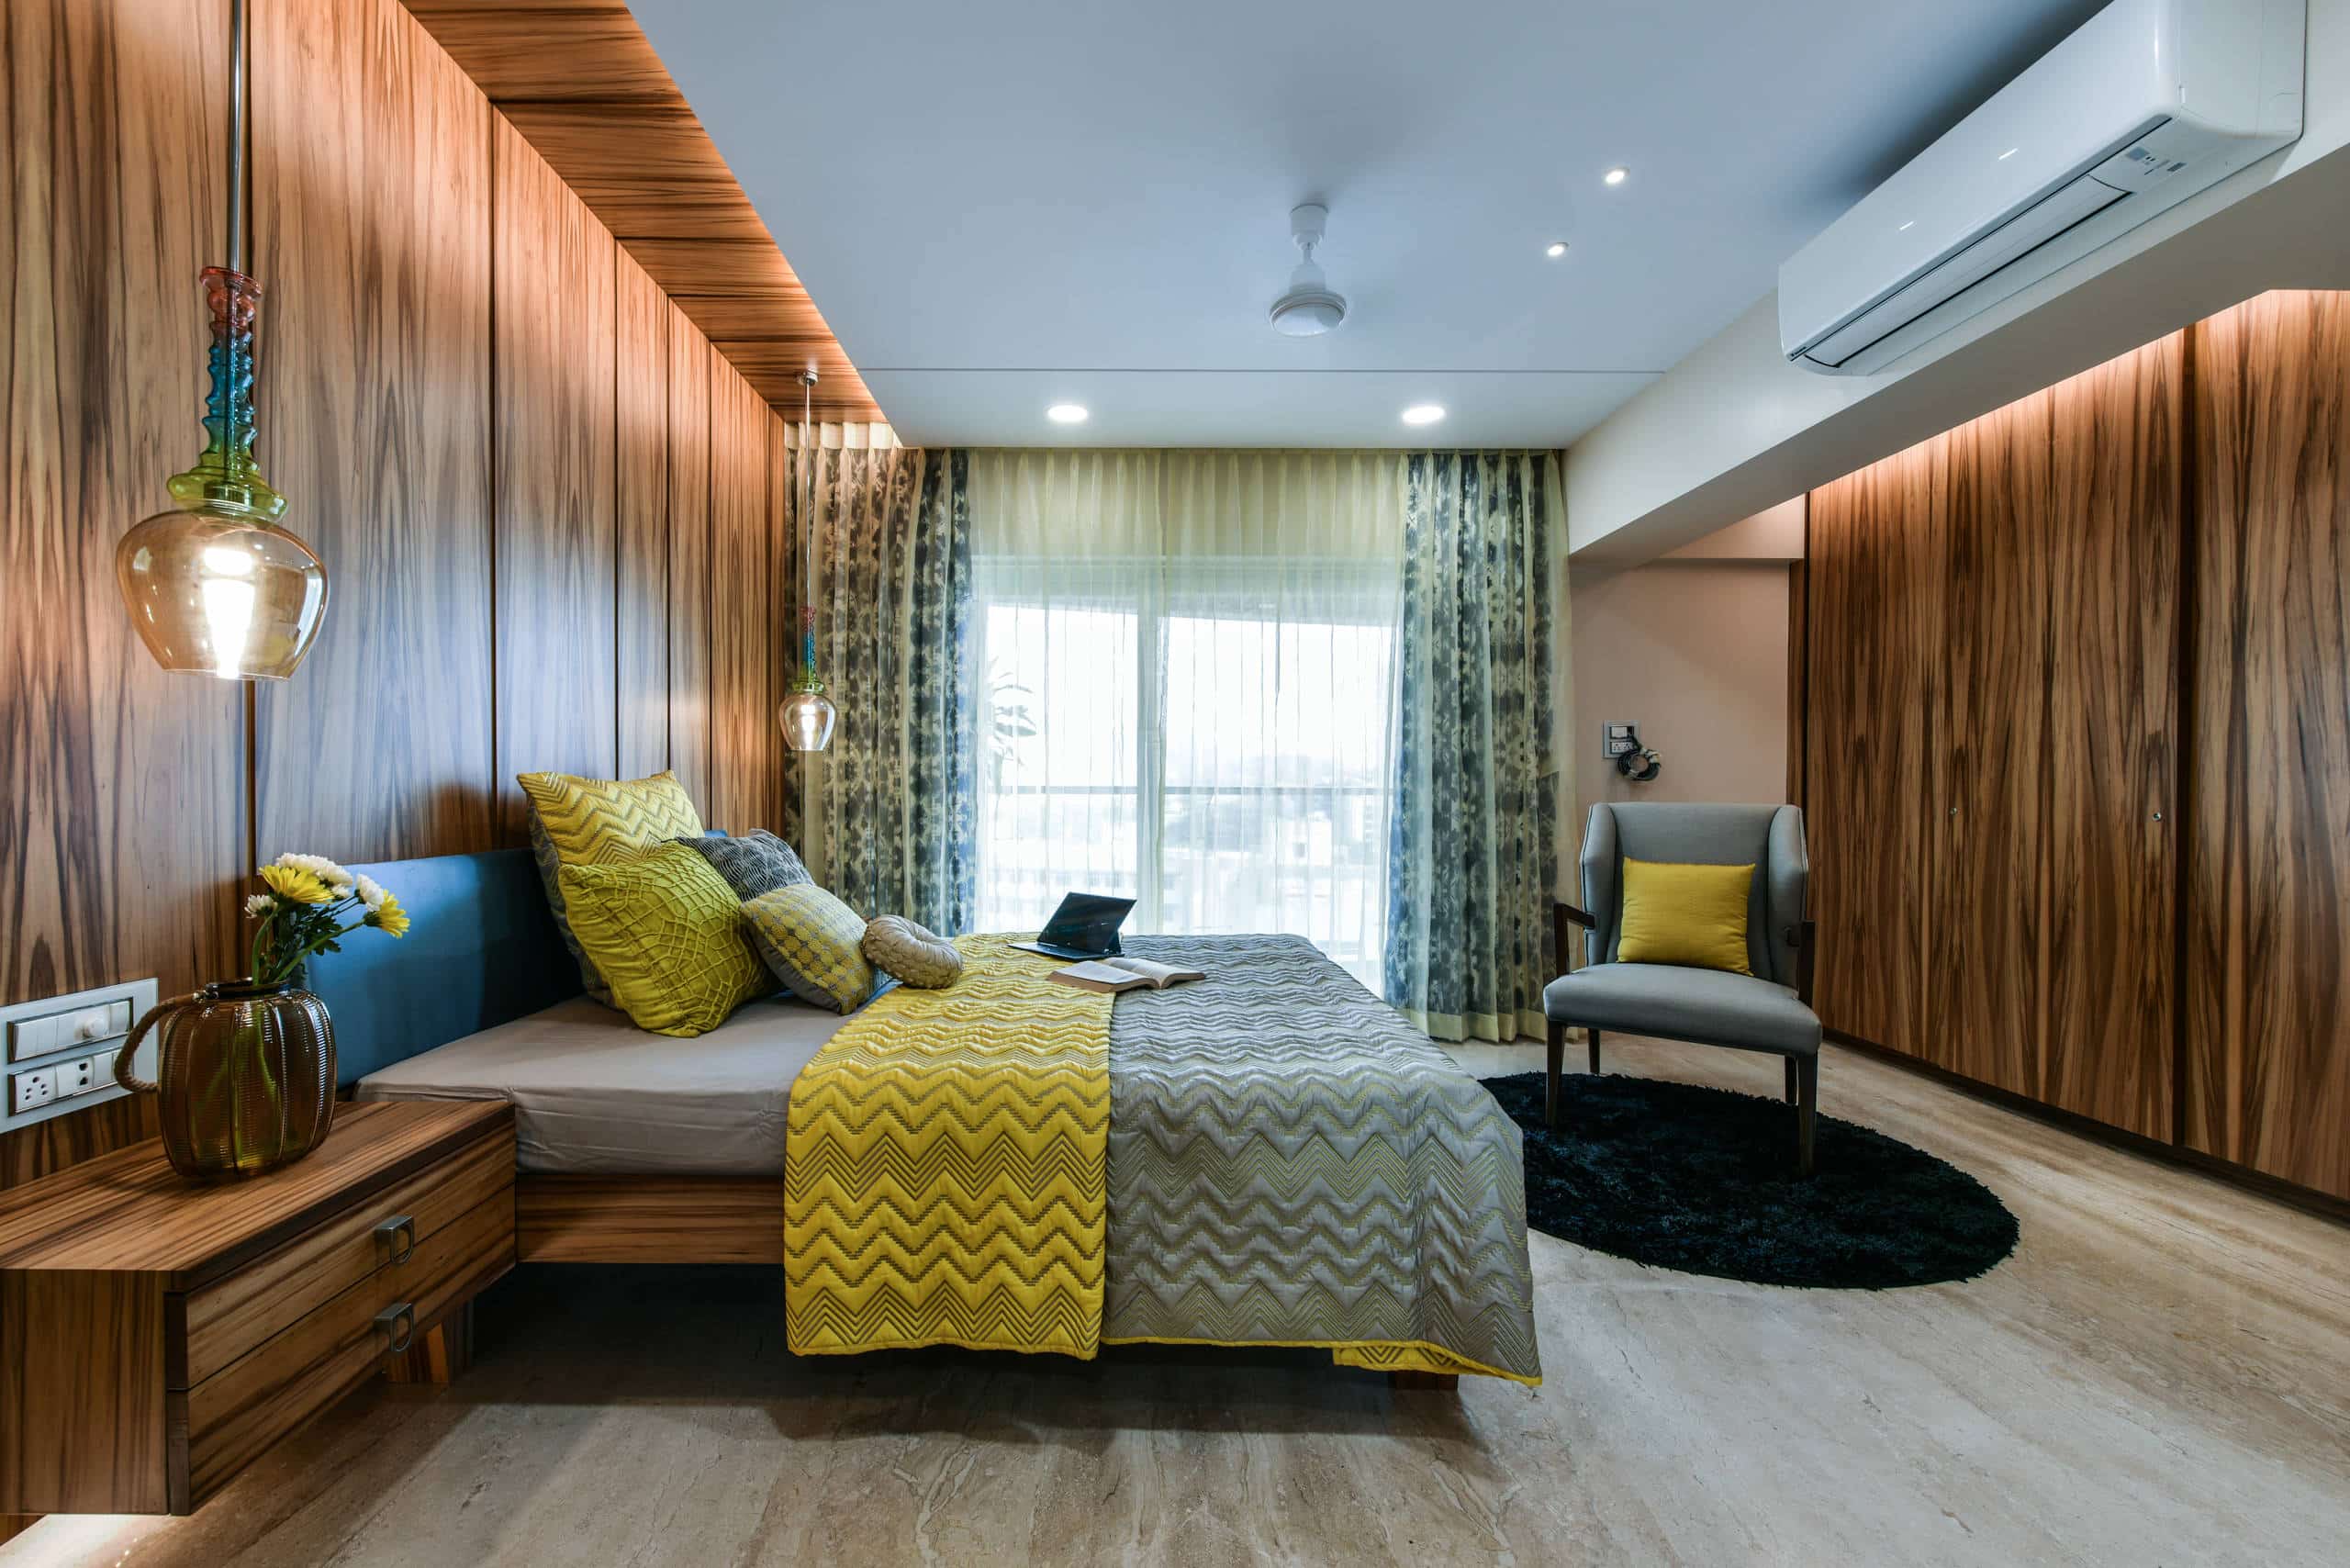 Bedroom Design Ideas In India - BEST HOME DESIGN IDEAS